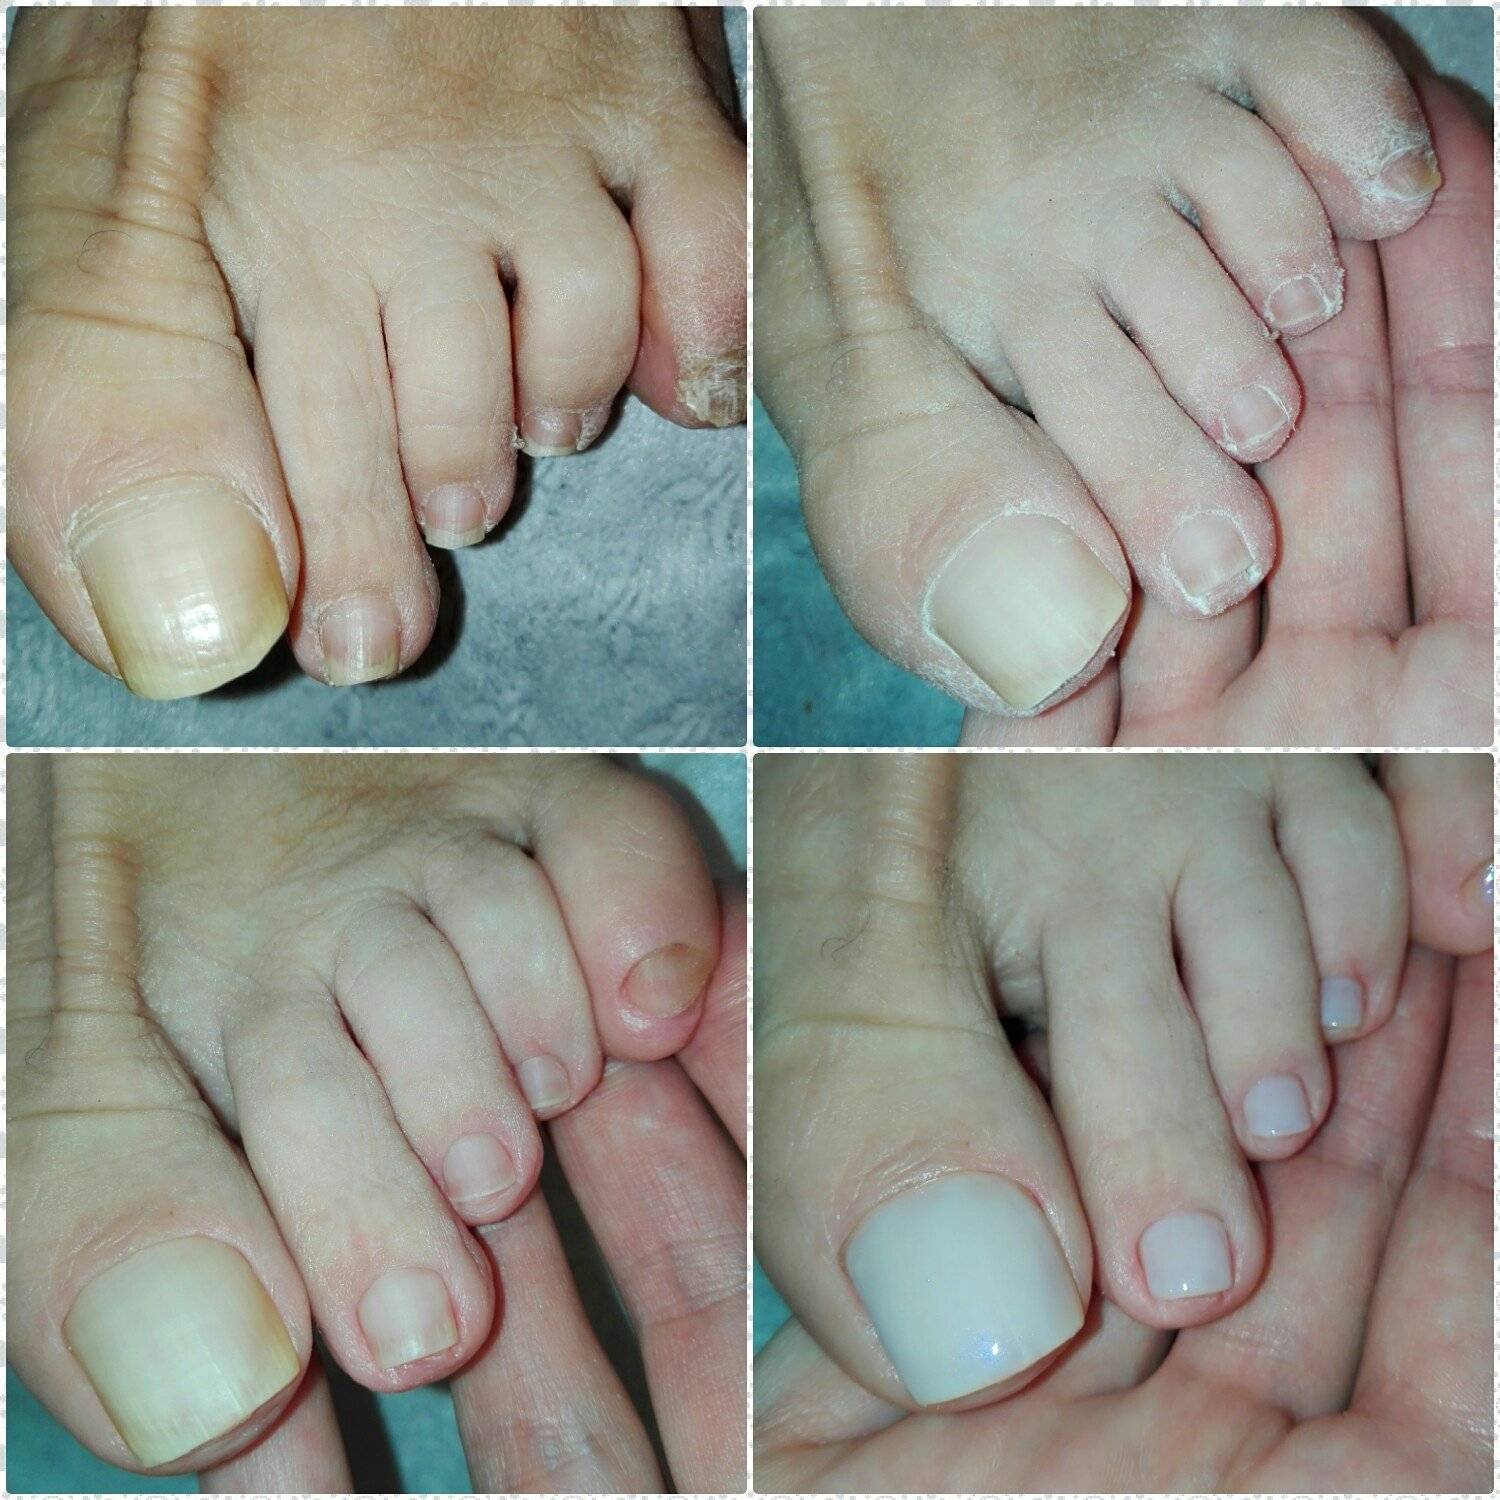 Наращивание ногтей на ногах гелем, полигелем. фото до и после, видео, как делать в домашних условиях